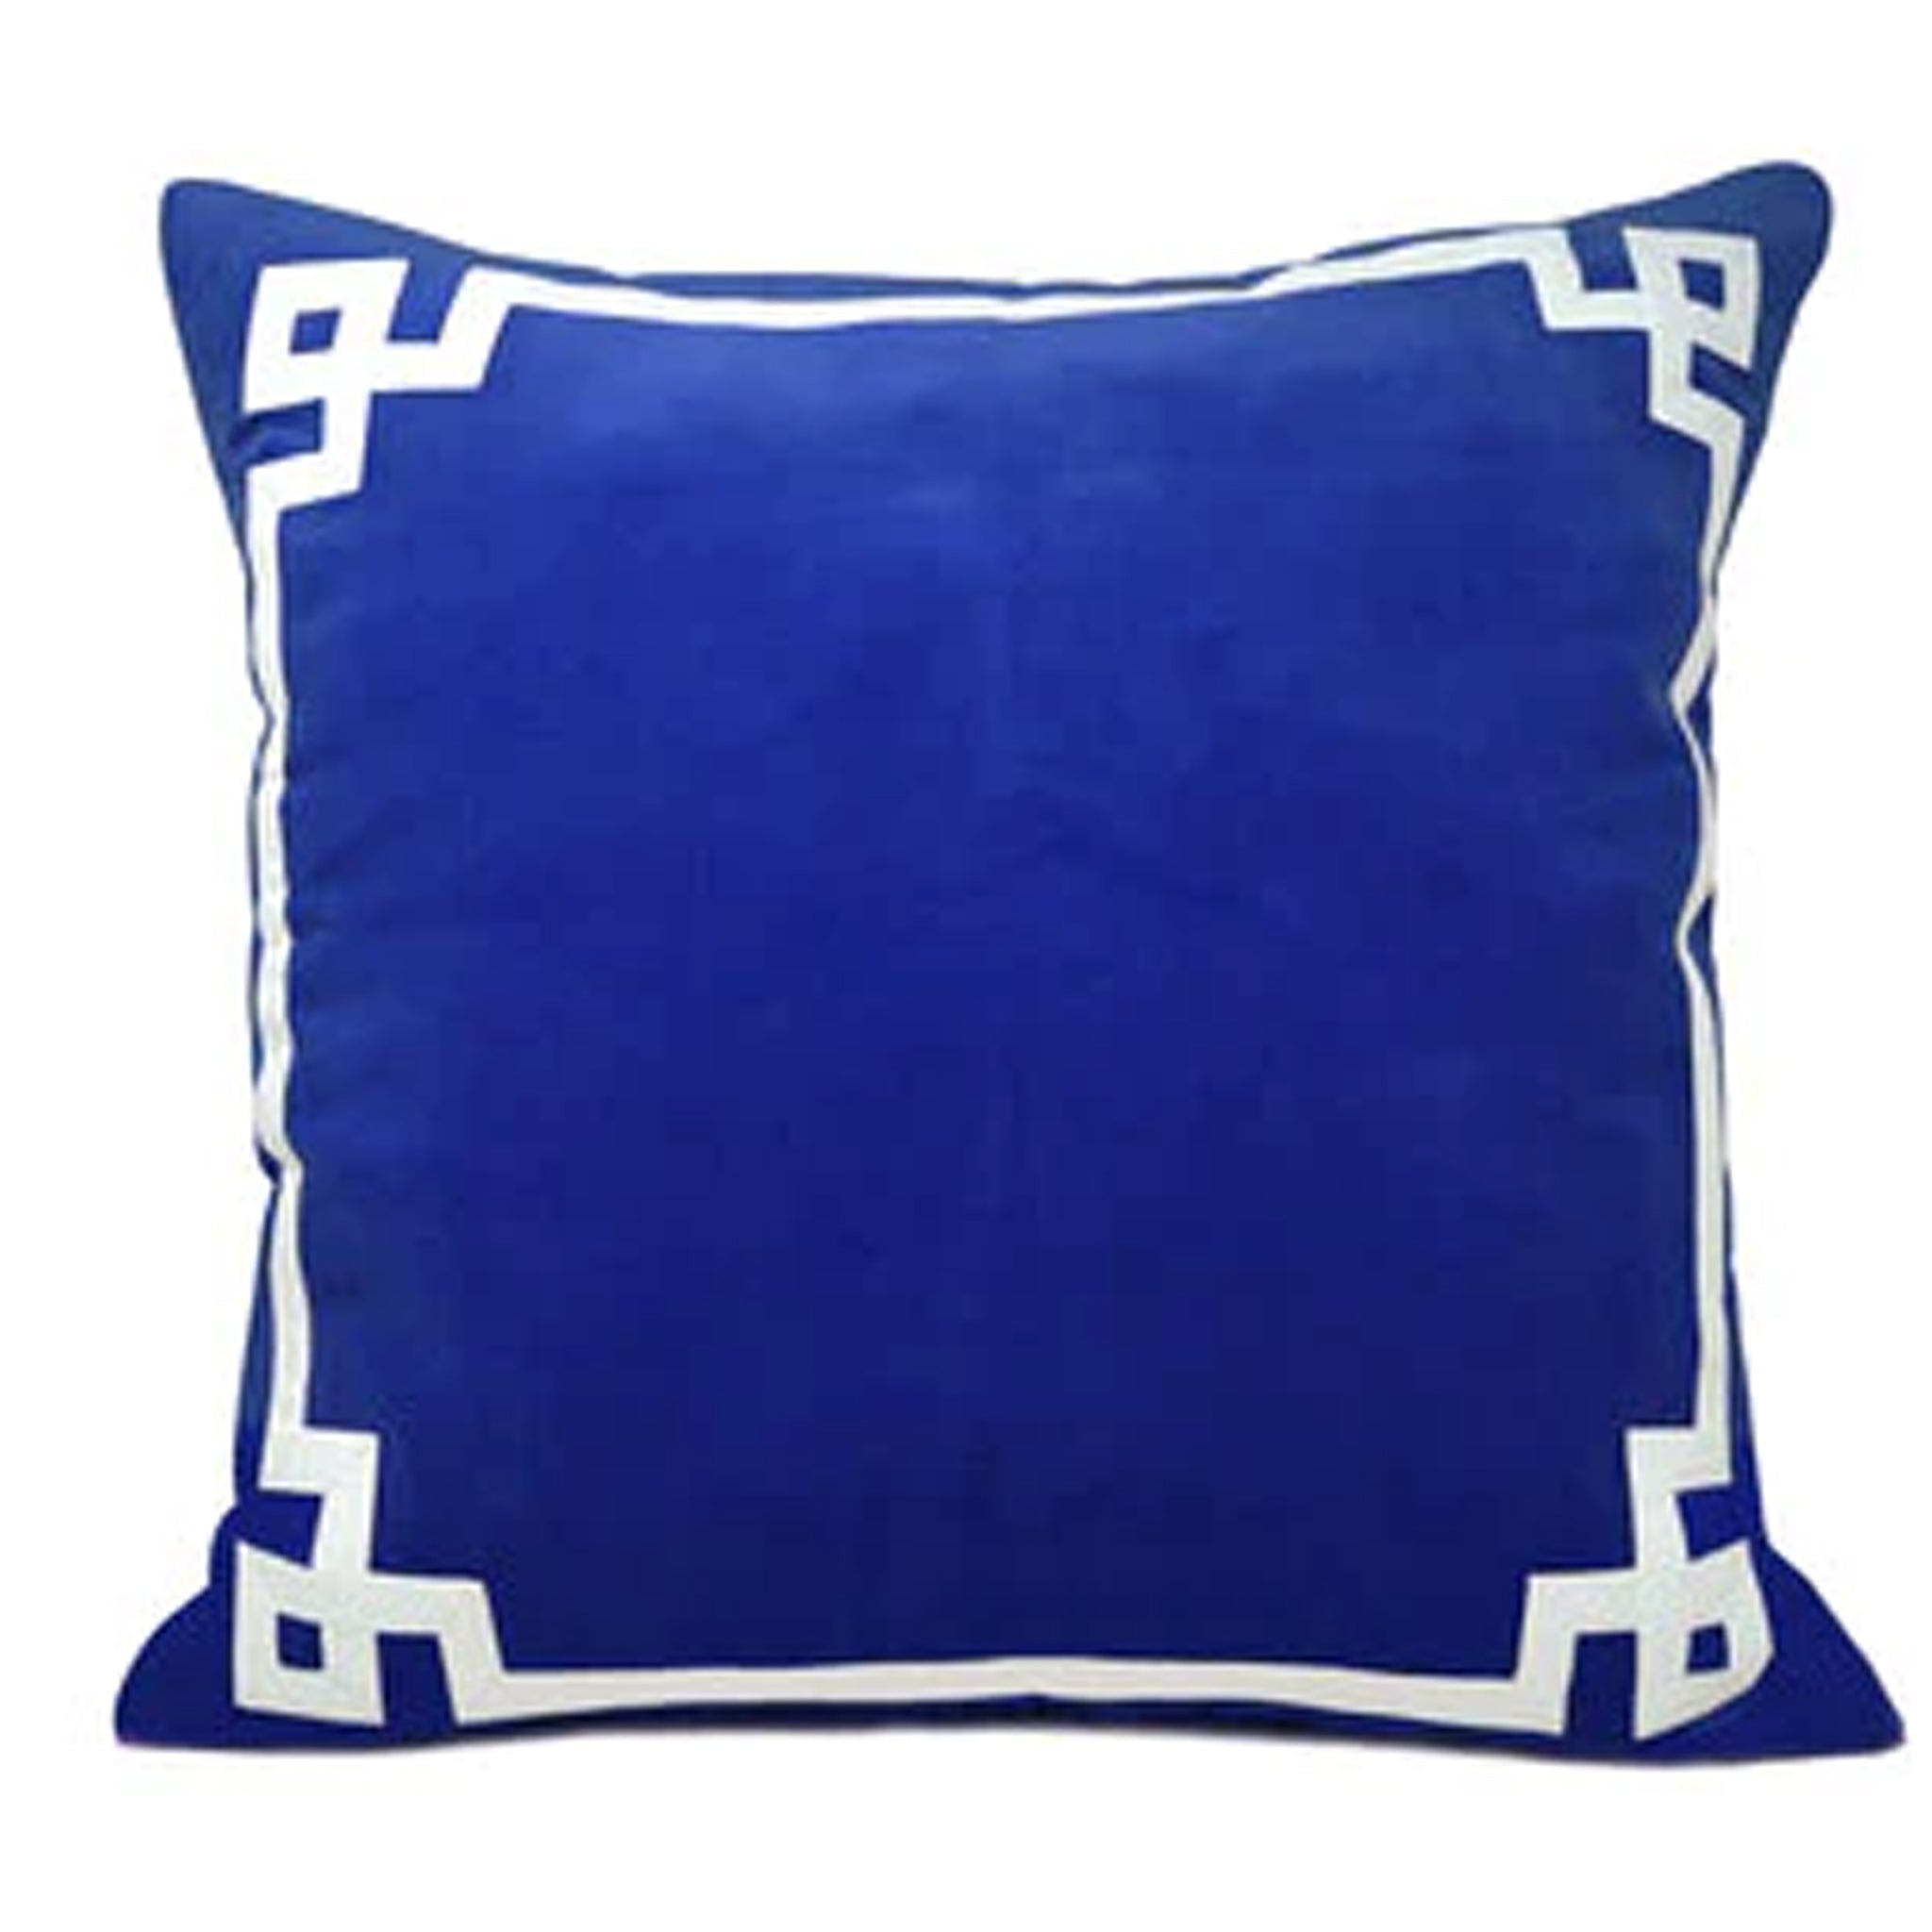 Royal Blue Velvet Greek Key Pillow Cover